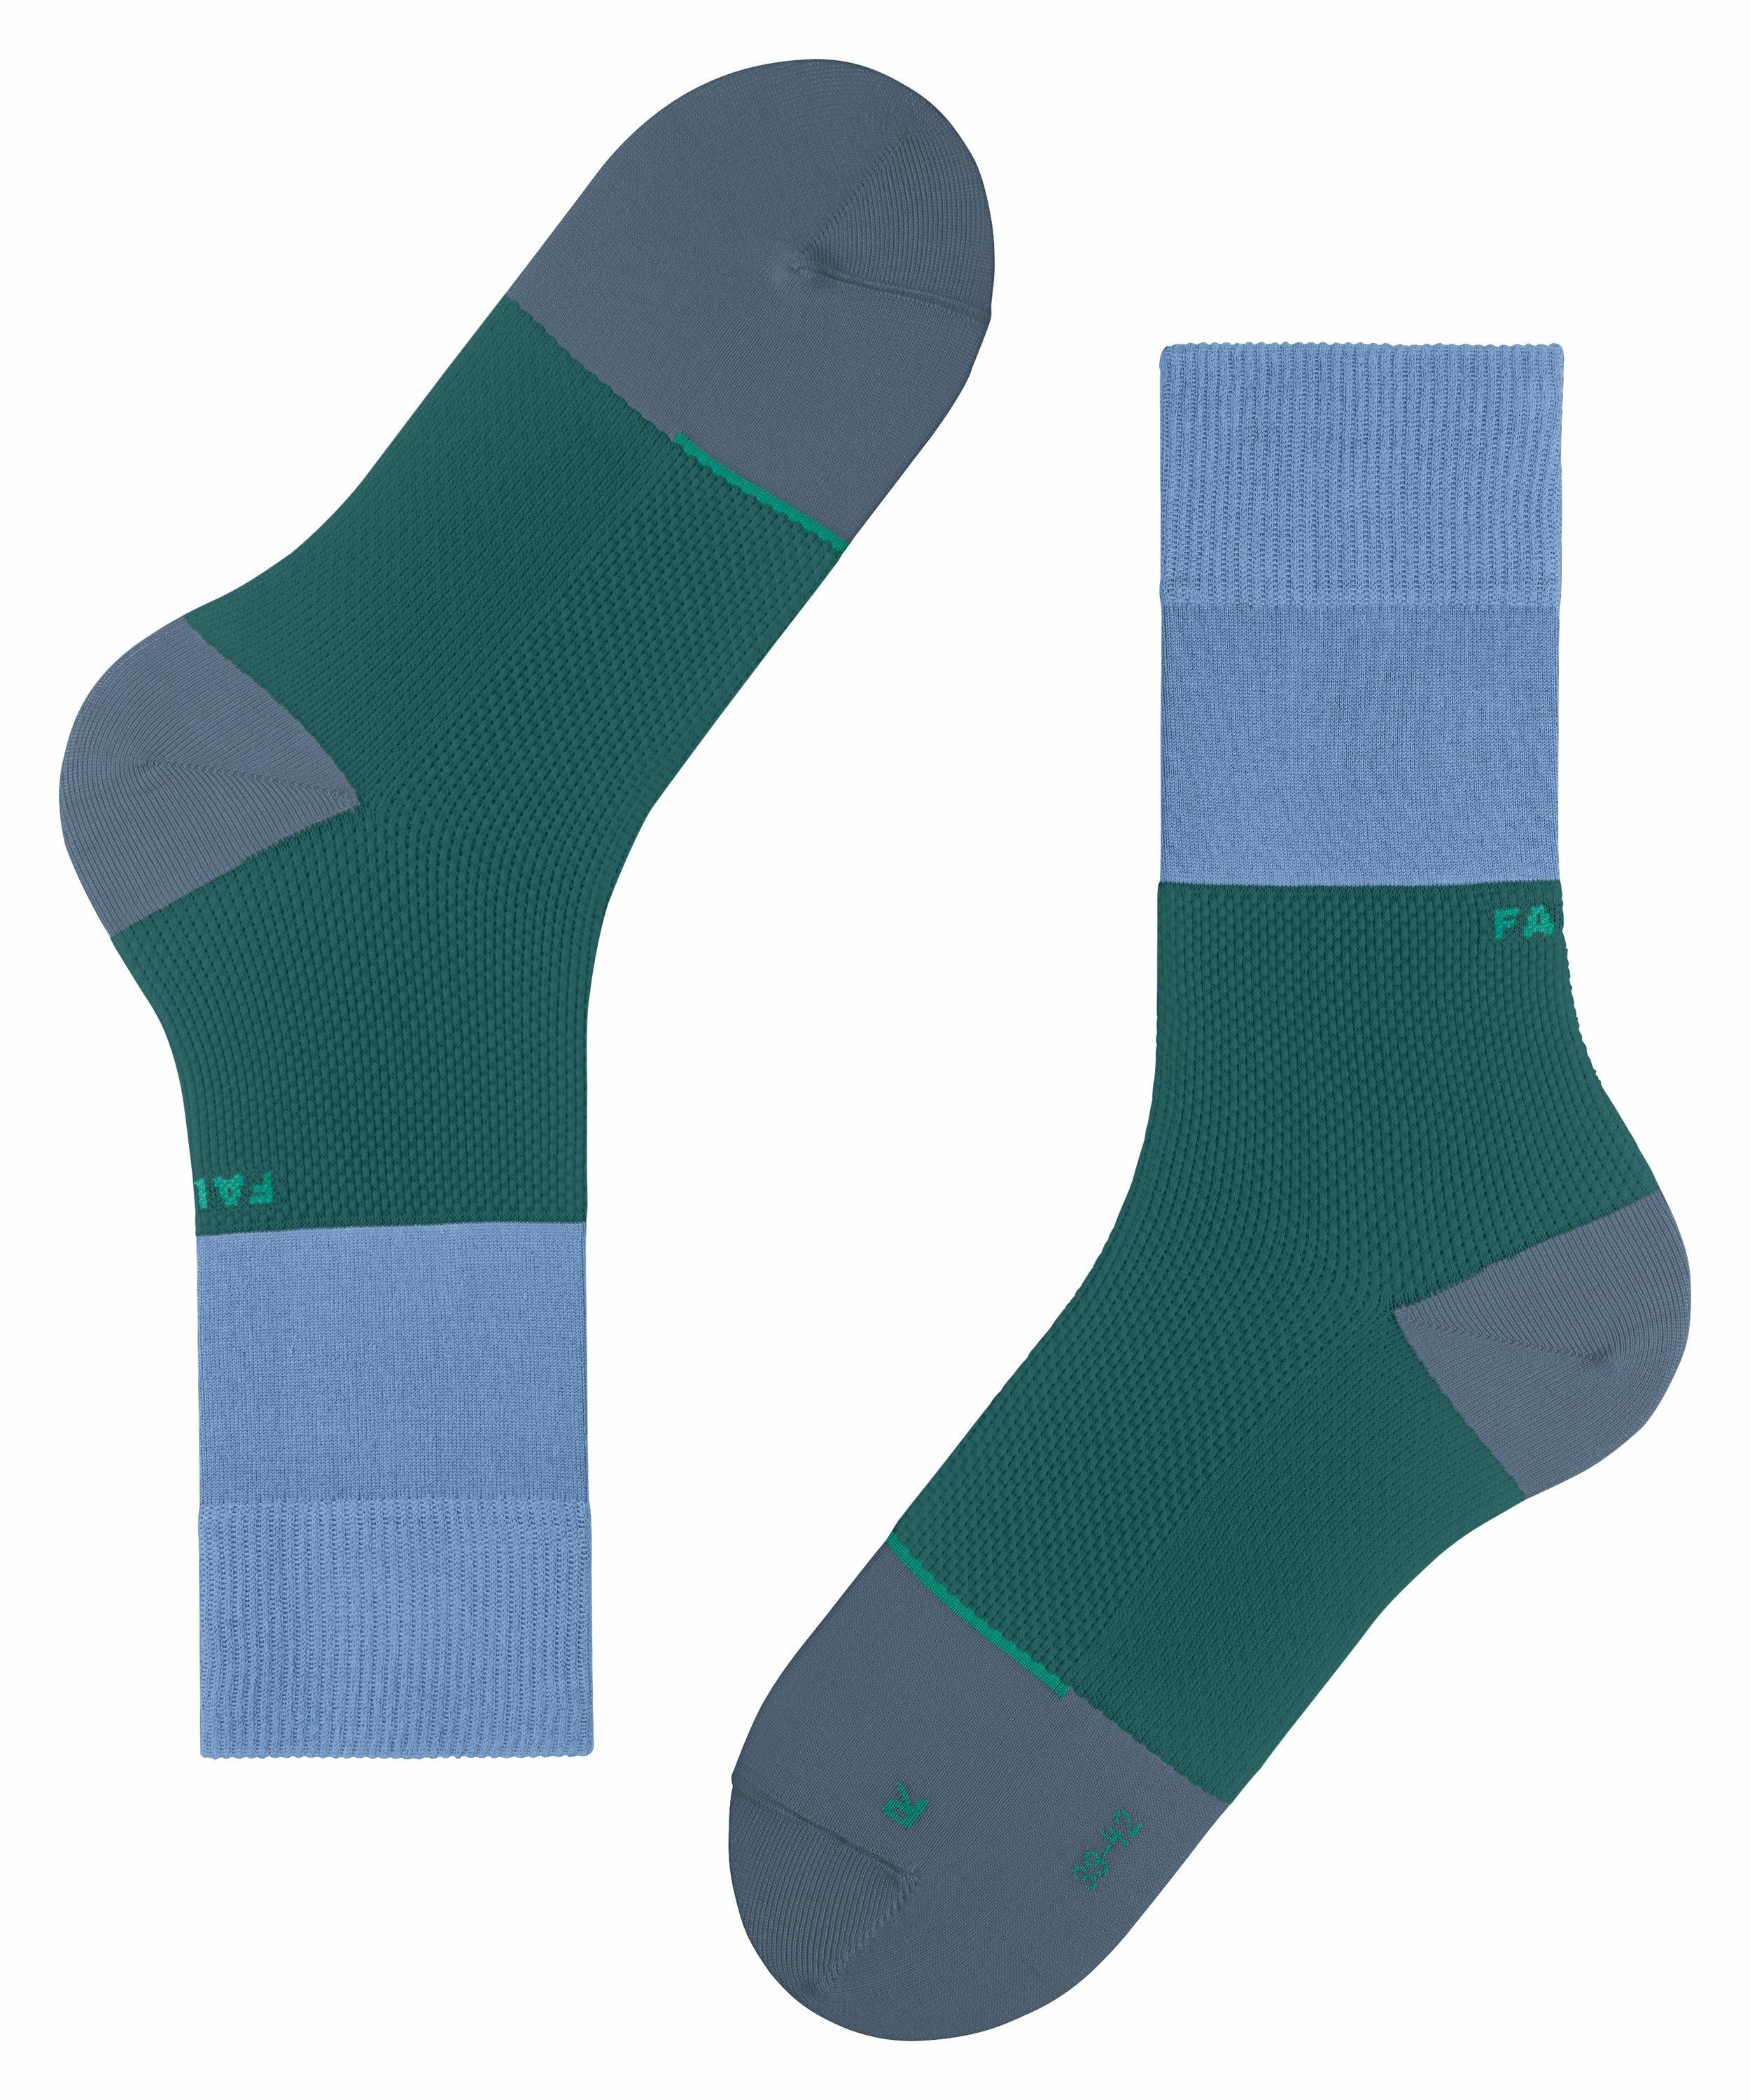 FALKE Nature Force Socken, 44-45, Blau, Streifen, Baumwolle (Bio), 12452-65 günstig online kaufen